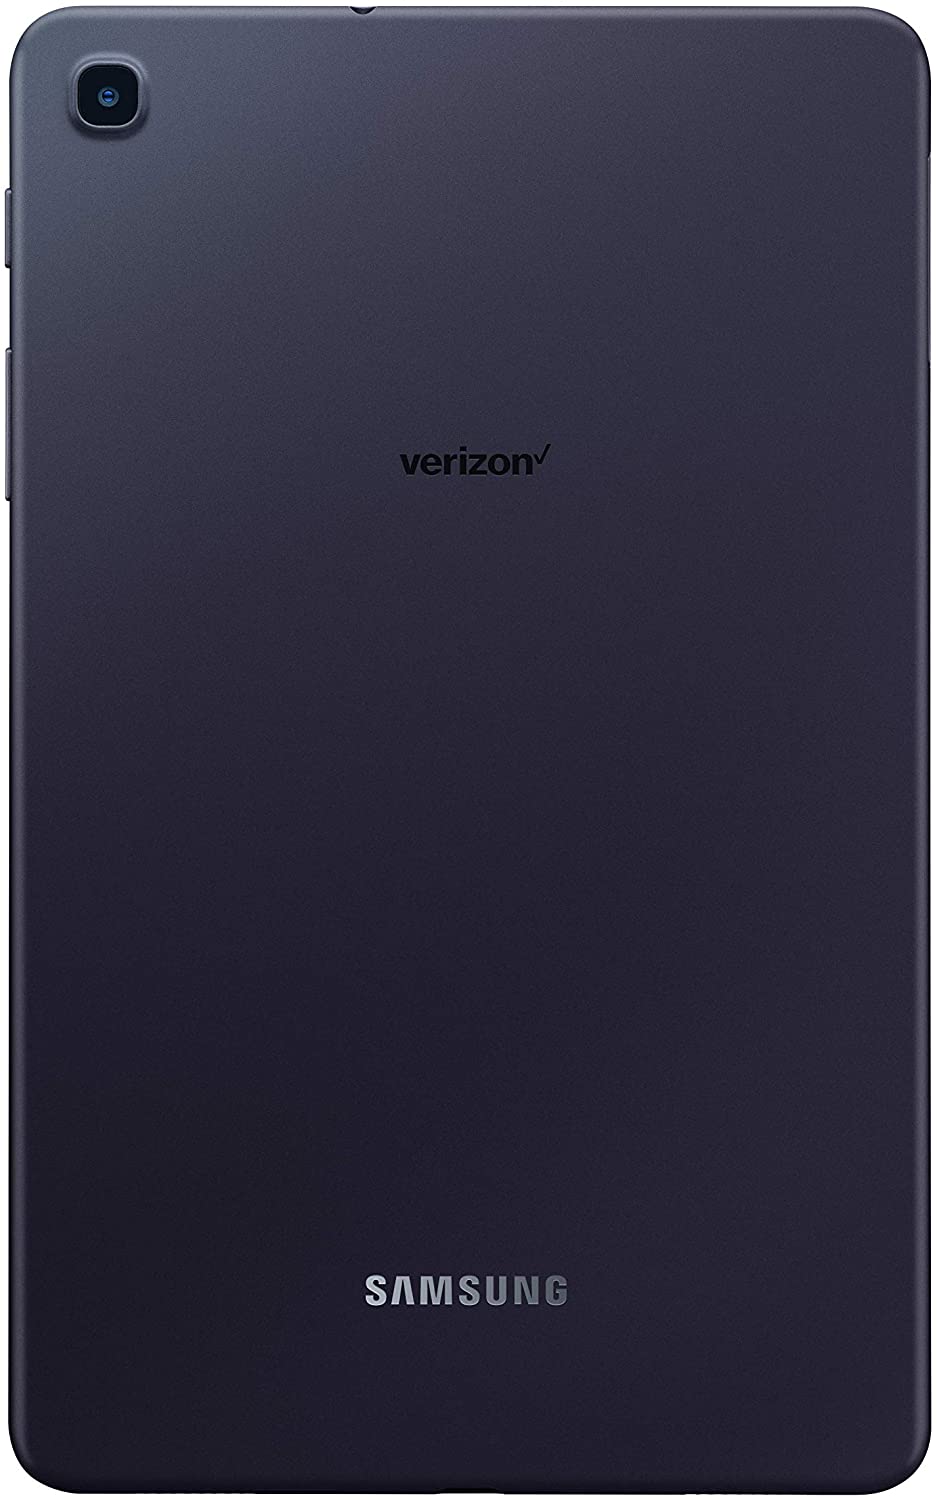 Samsung SM-T307UZNAVZW-RB 8.4" Galaxy Tab A 32GB 4G LTE Tablet Mocha-Refurbished